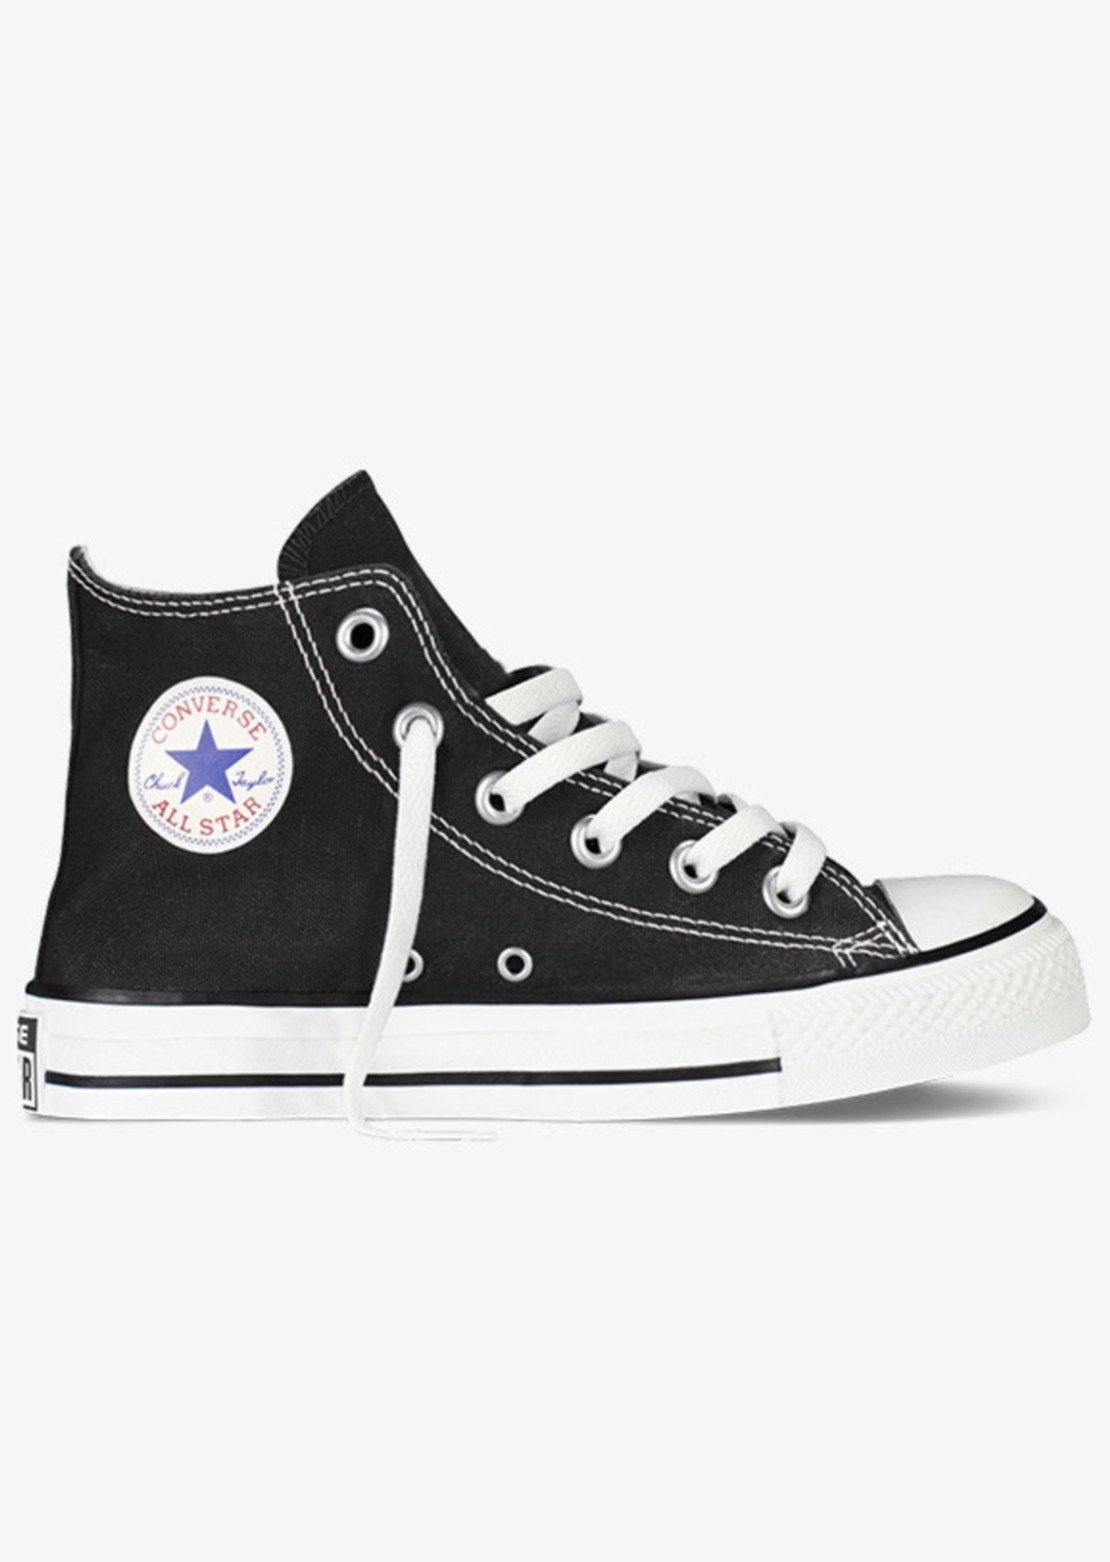 Converse Junior Chuck Taylor All Star HI Shoes Black